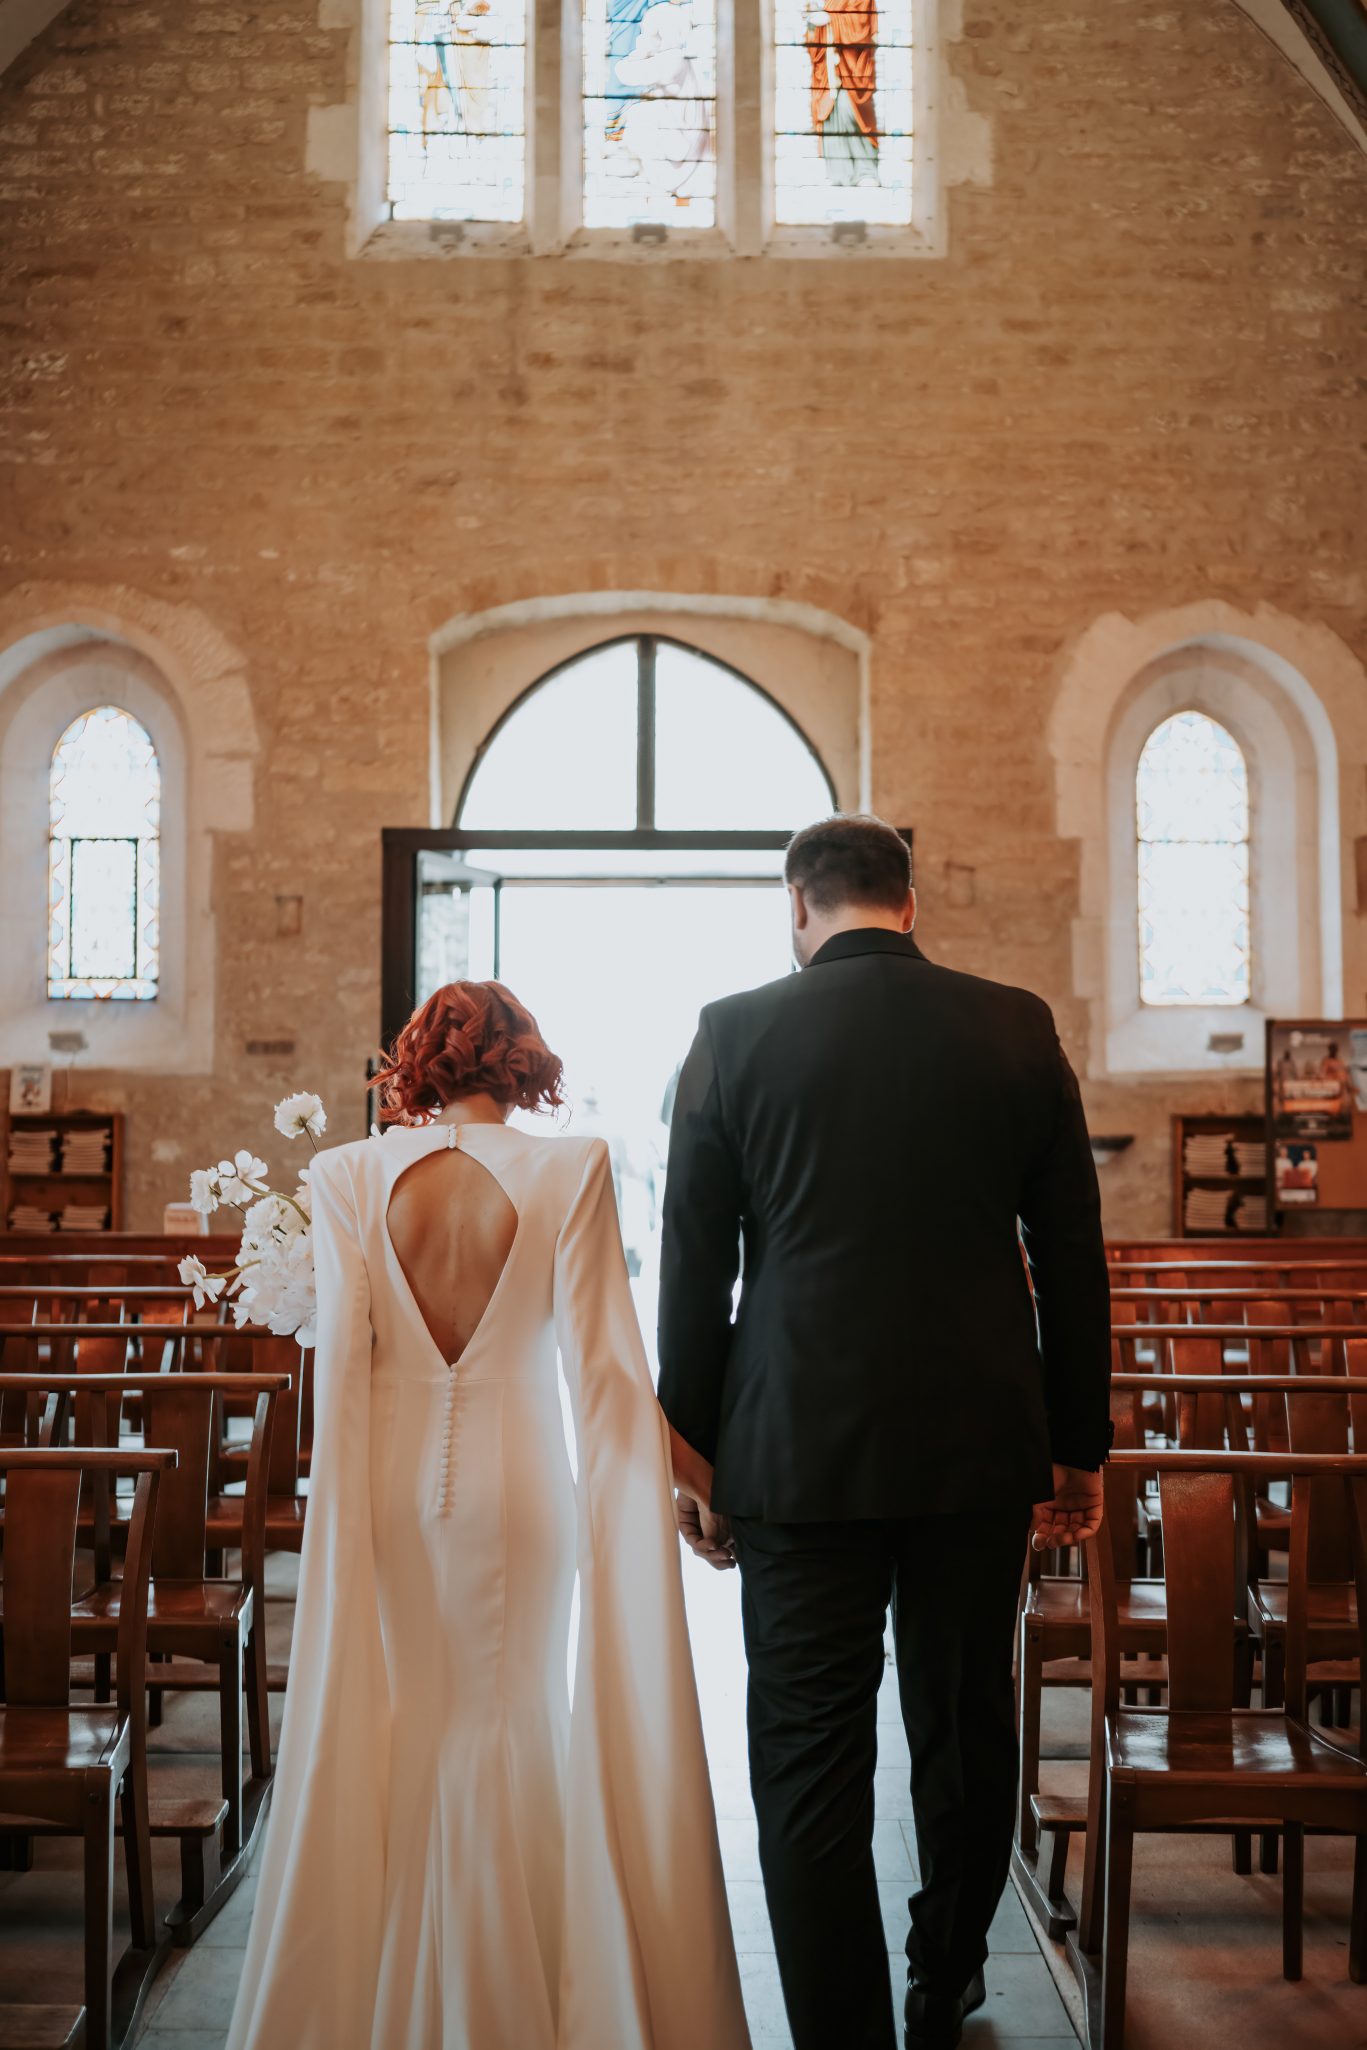 Mariage élégante au mas de so empreinte éphémère wedding planner designer sortie église